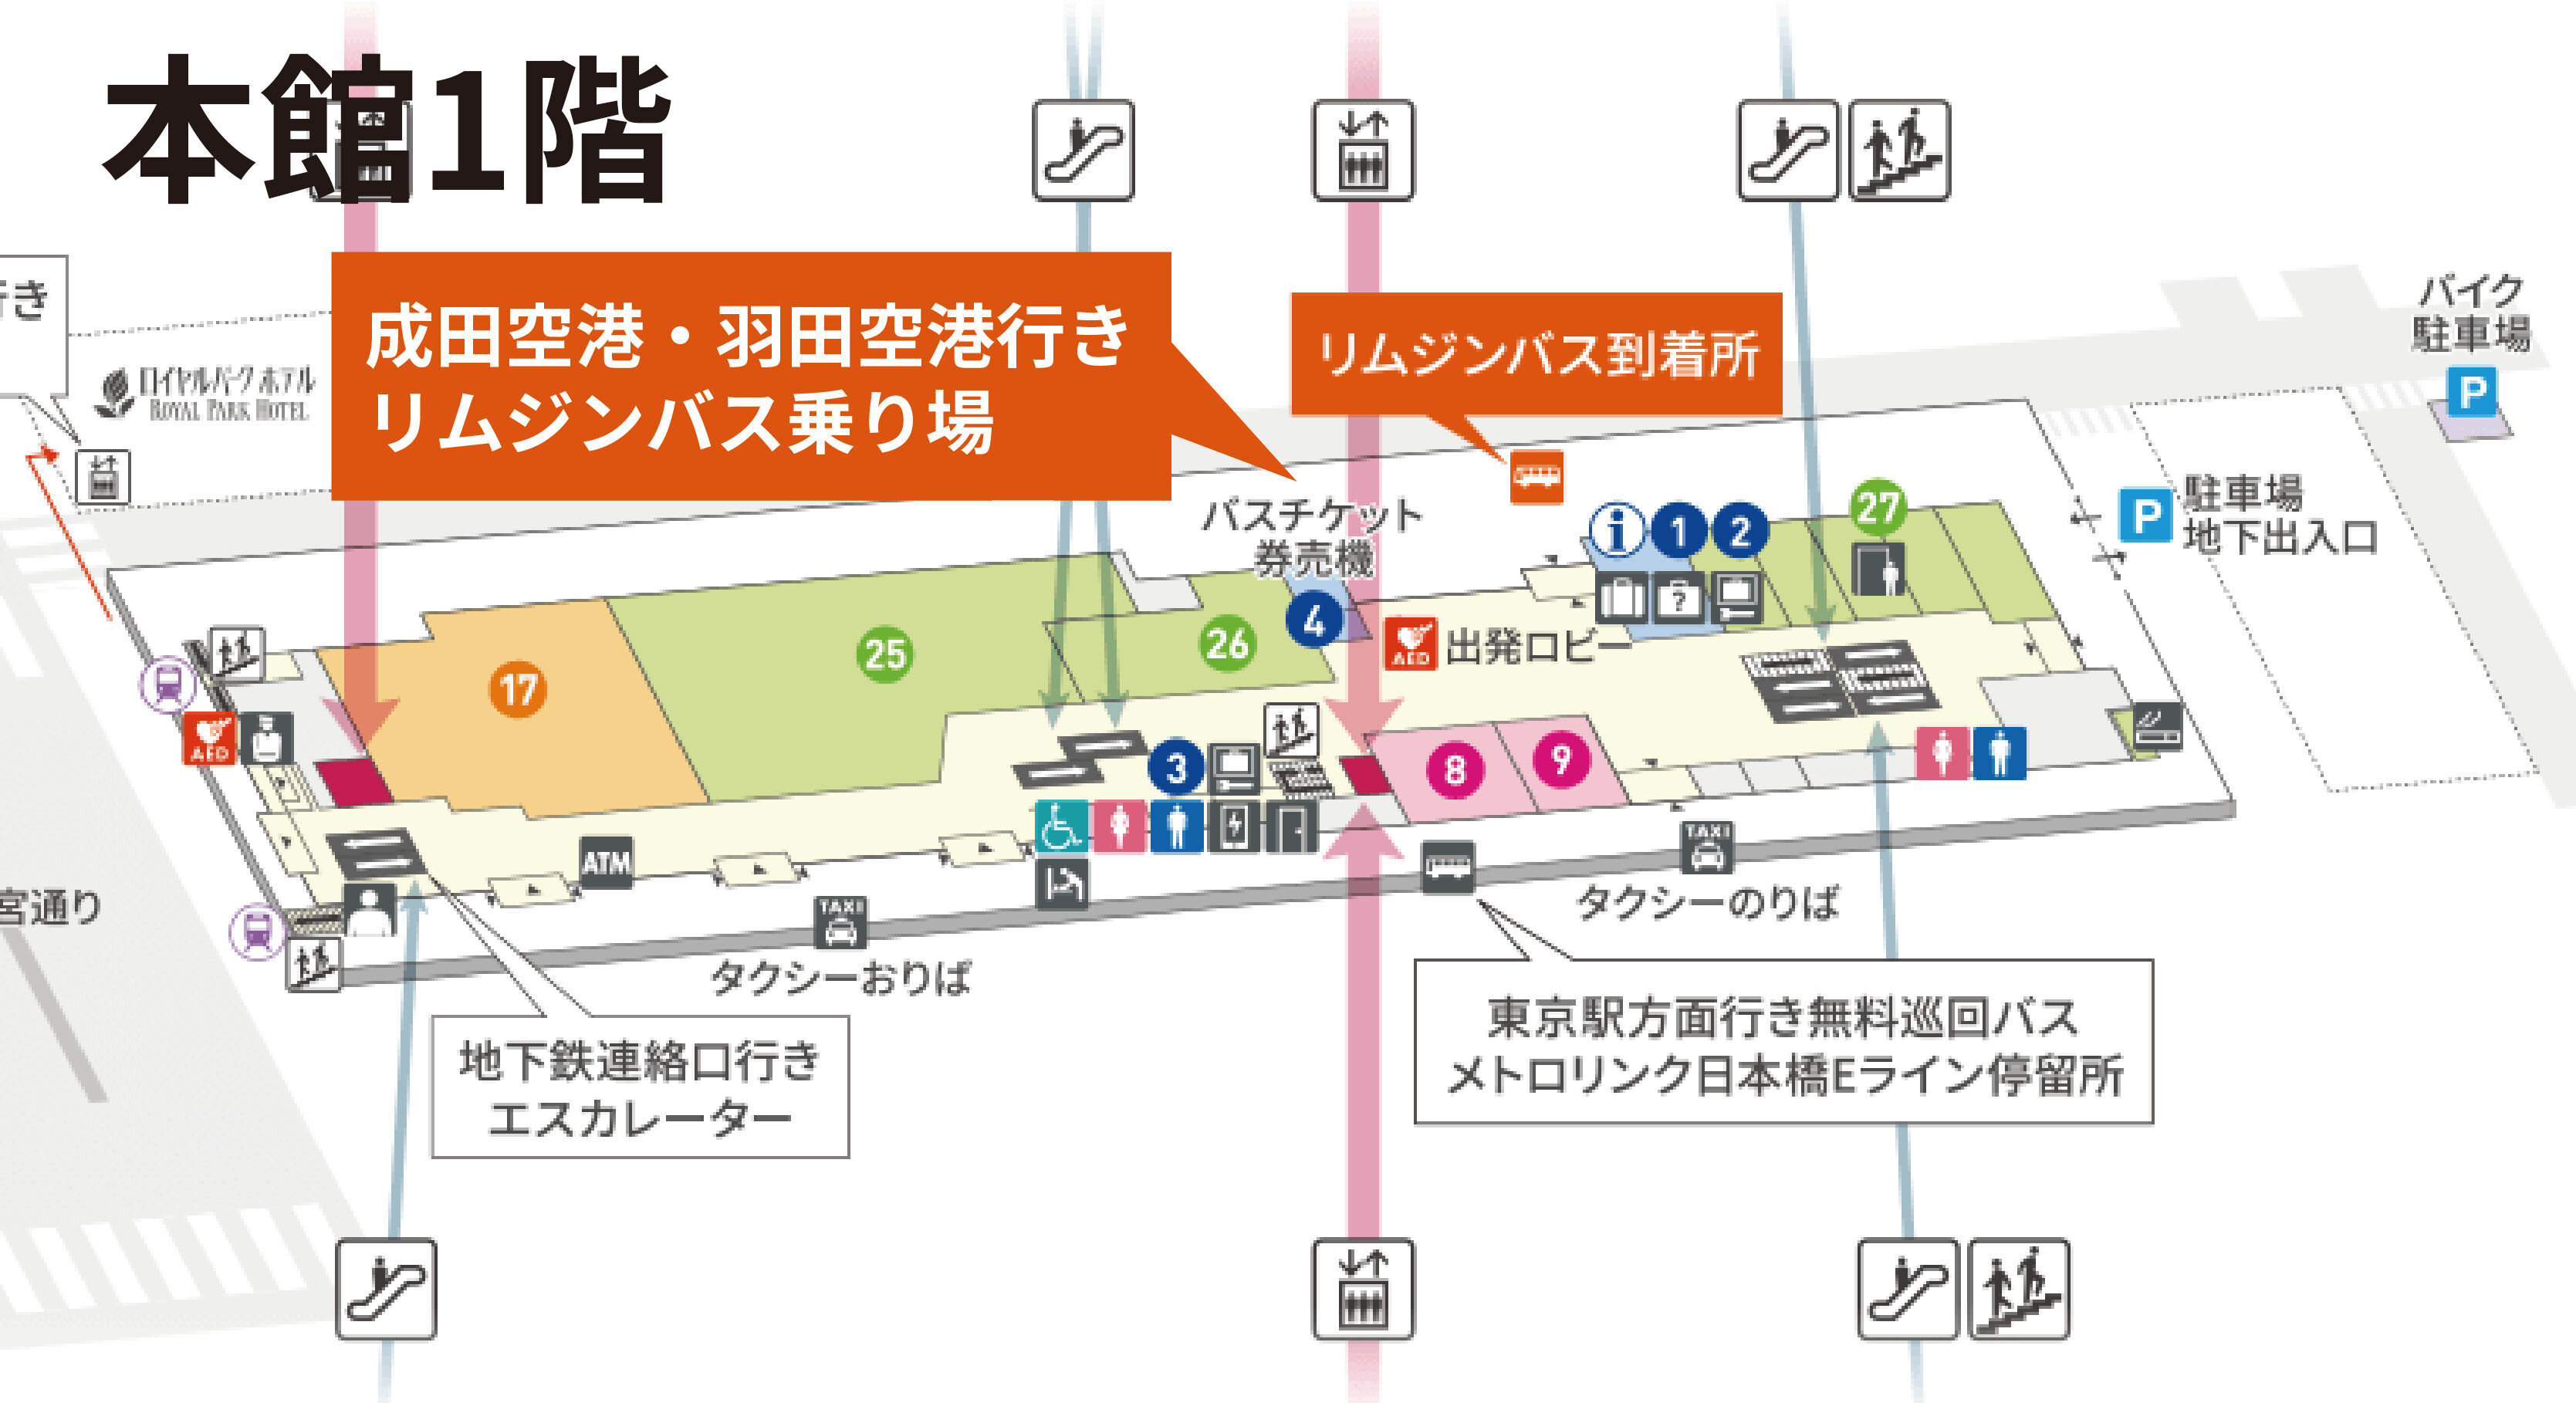 お知らせ - 成田空港行きリムジンバス乗り場変更（本館3階→本館1階